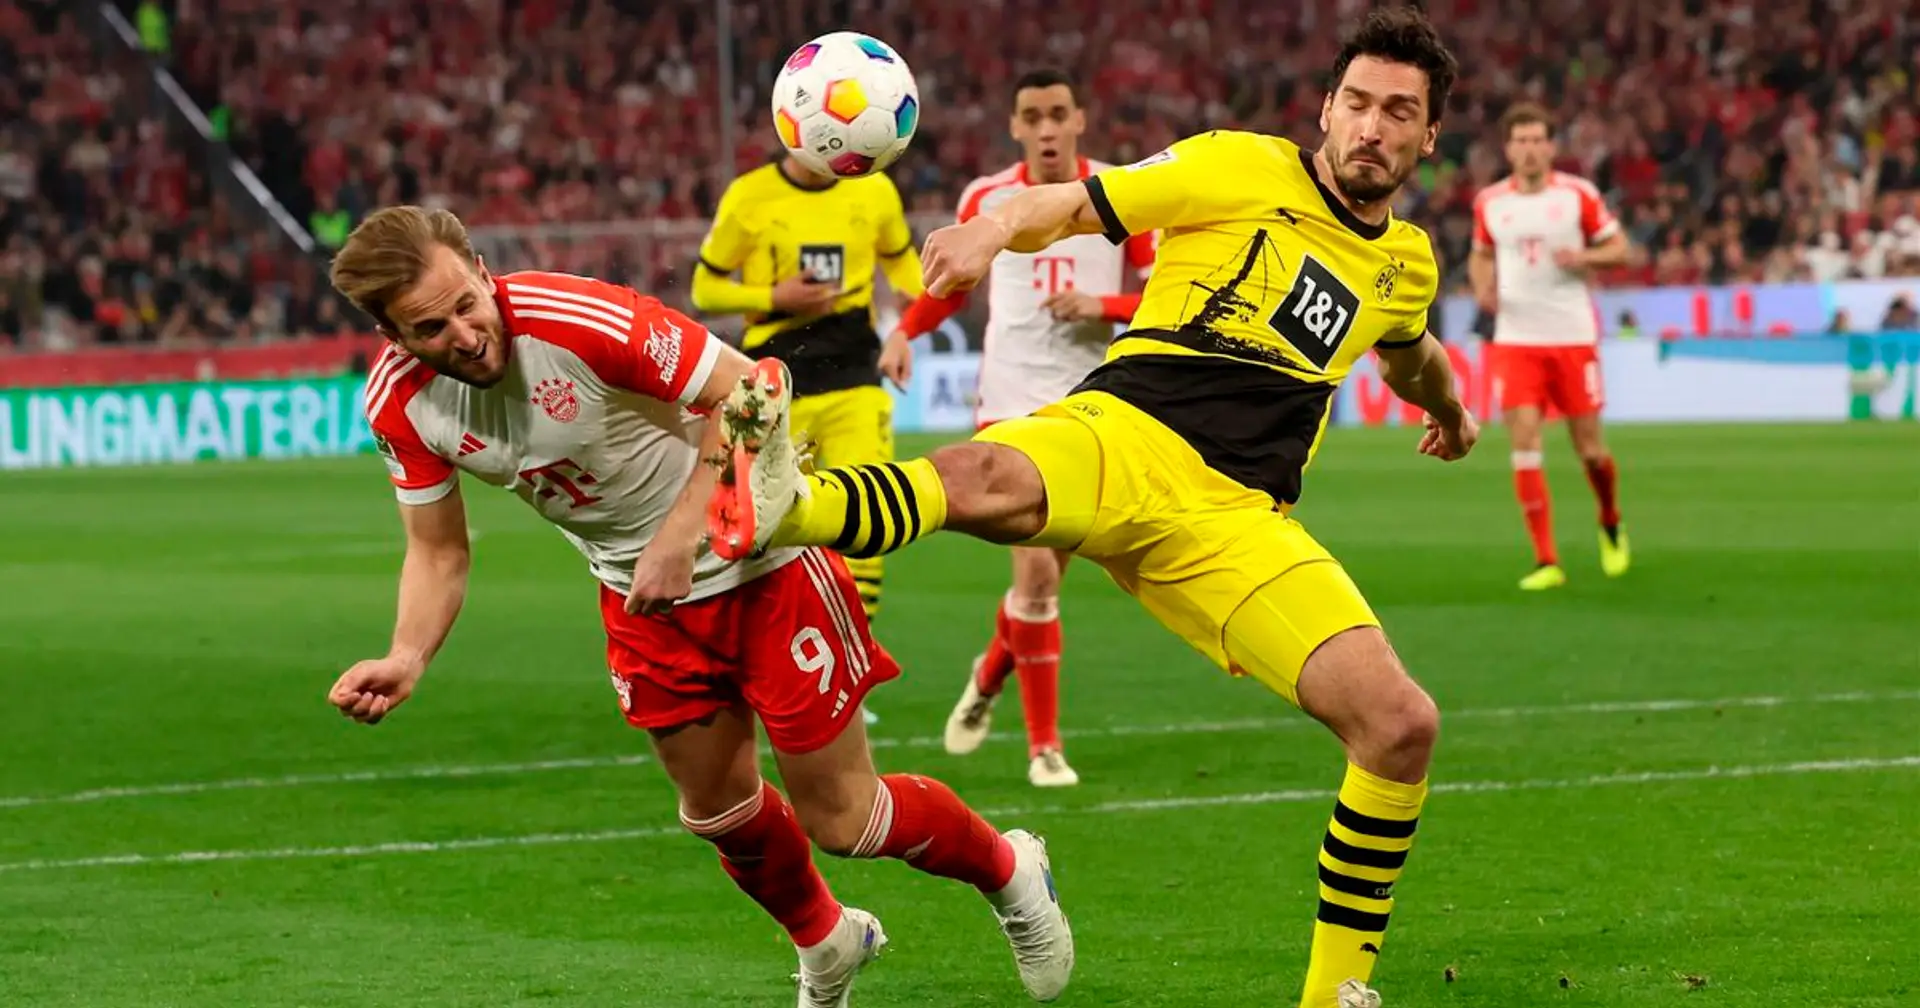 "Es gab heftige Ergebnisse hier": Hummels sagt, Auswärtssieg gegen Bayern sei "ein Statement"